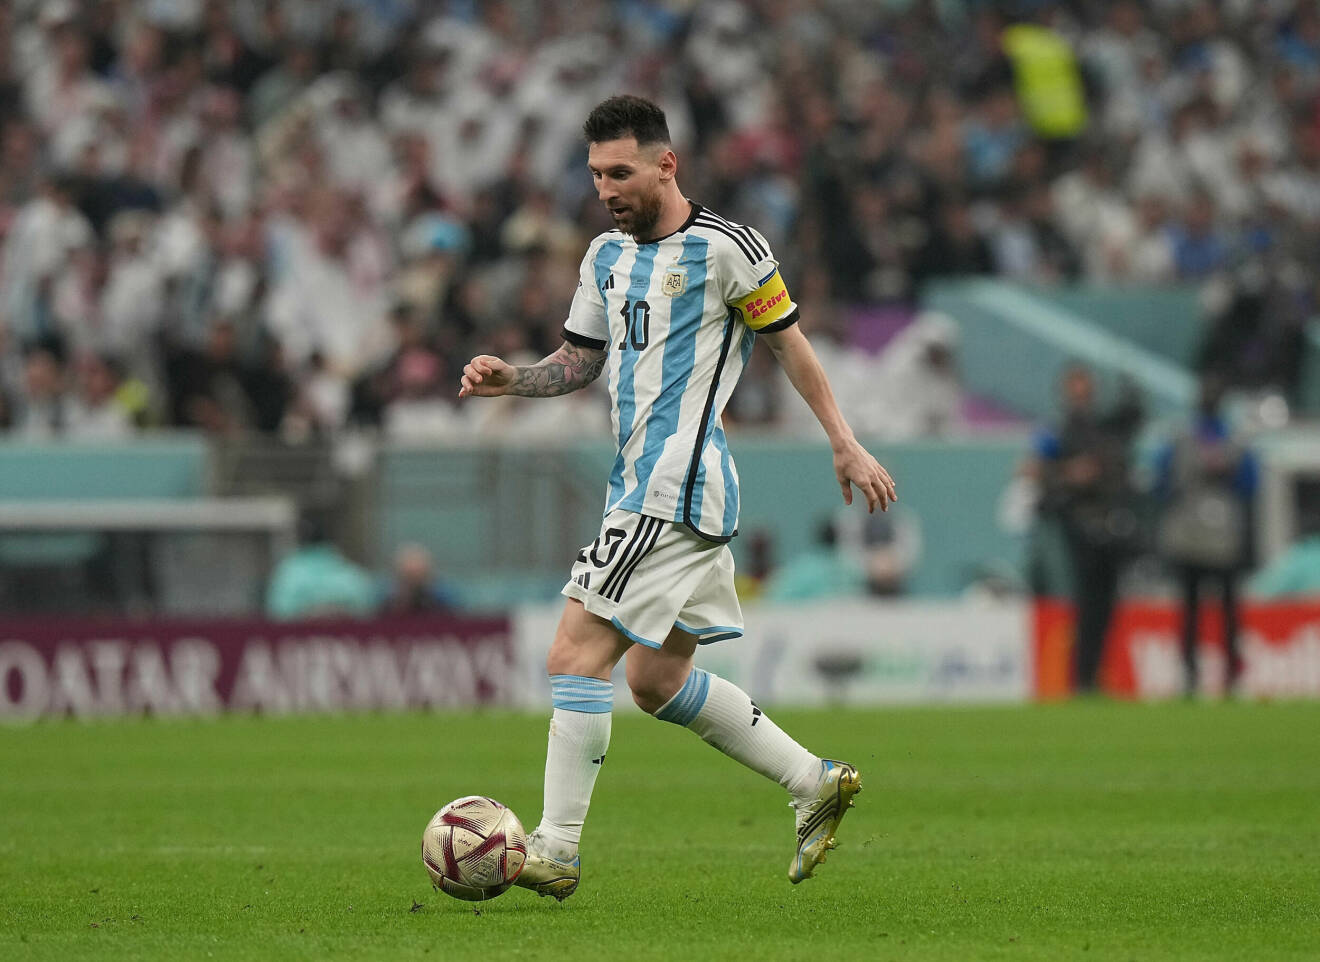 Fotbollsspelaren Lionel Messi på fotbollsplanen